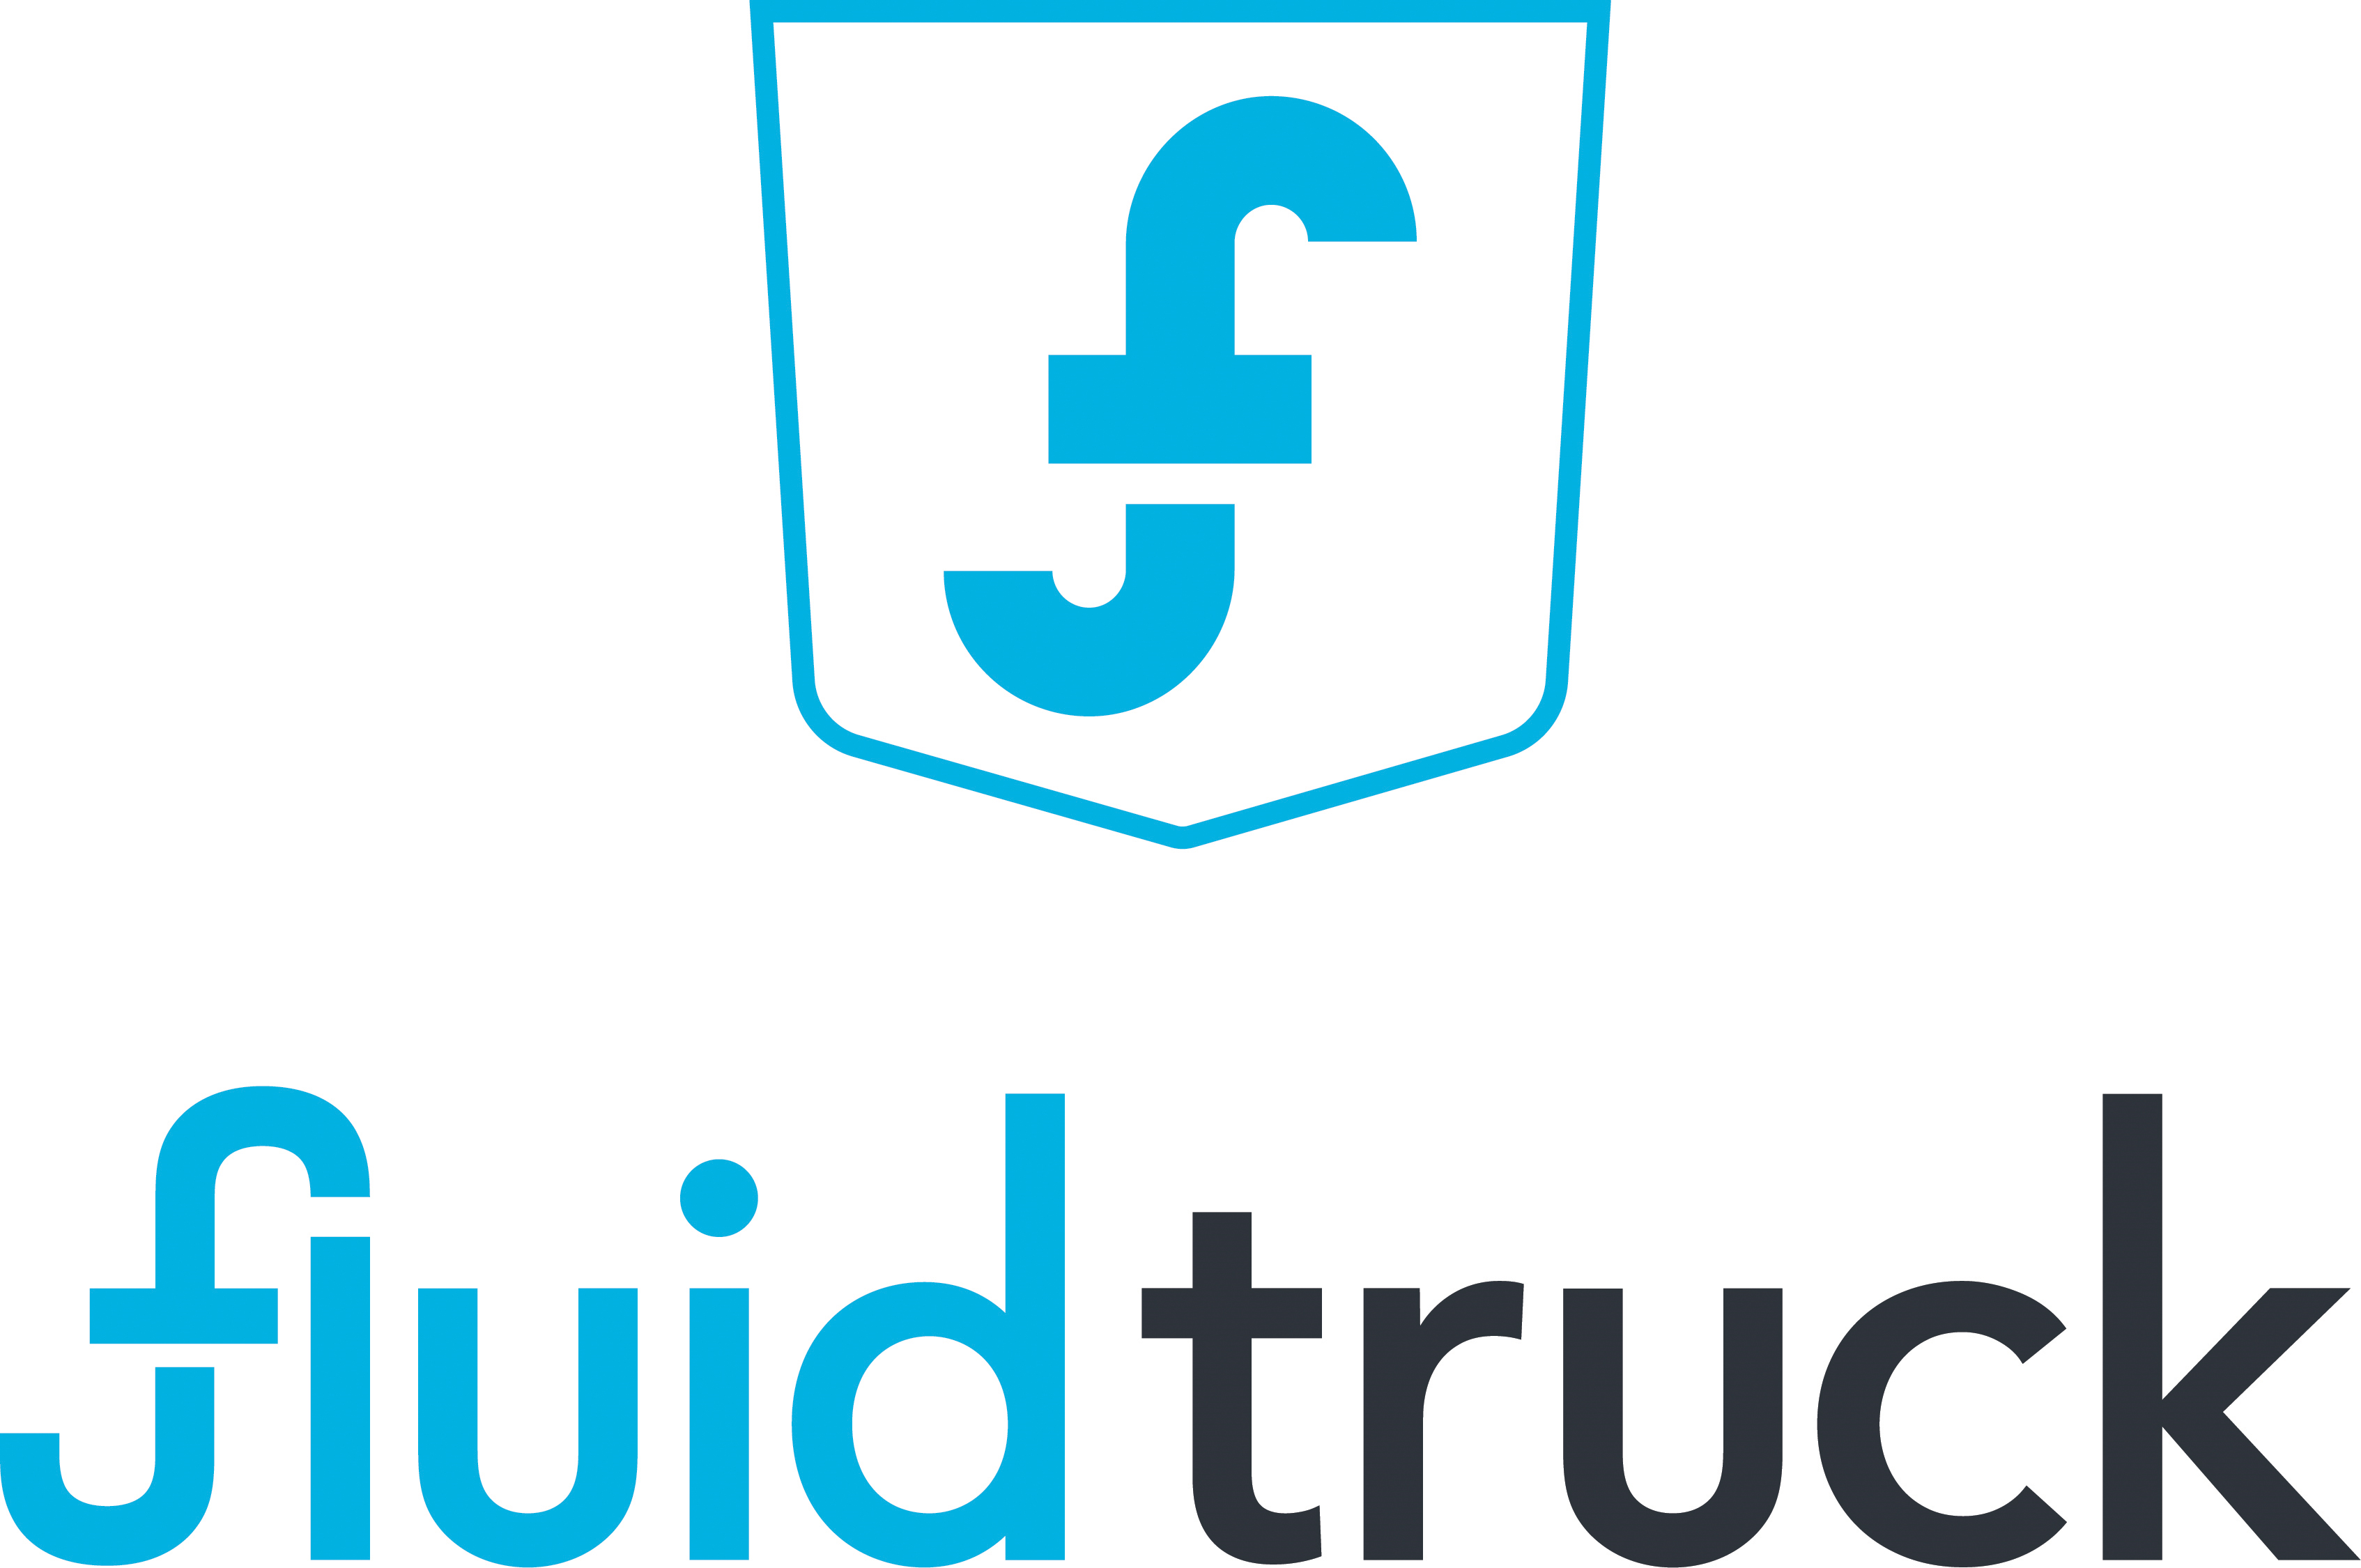 Fluid Truck logo